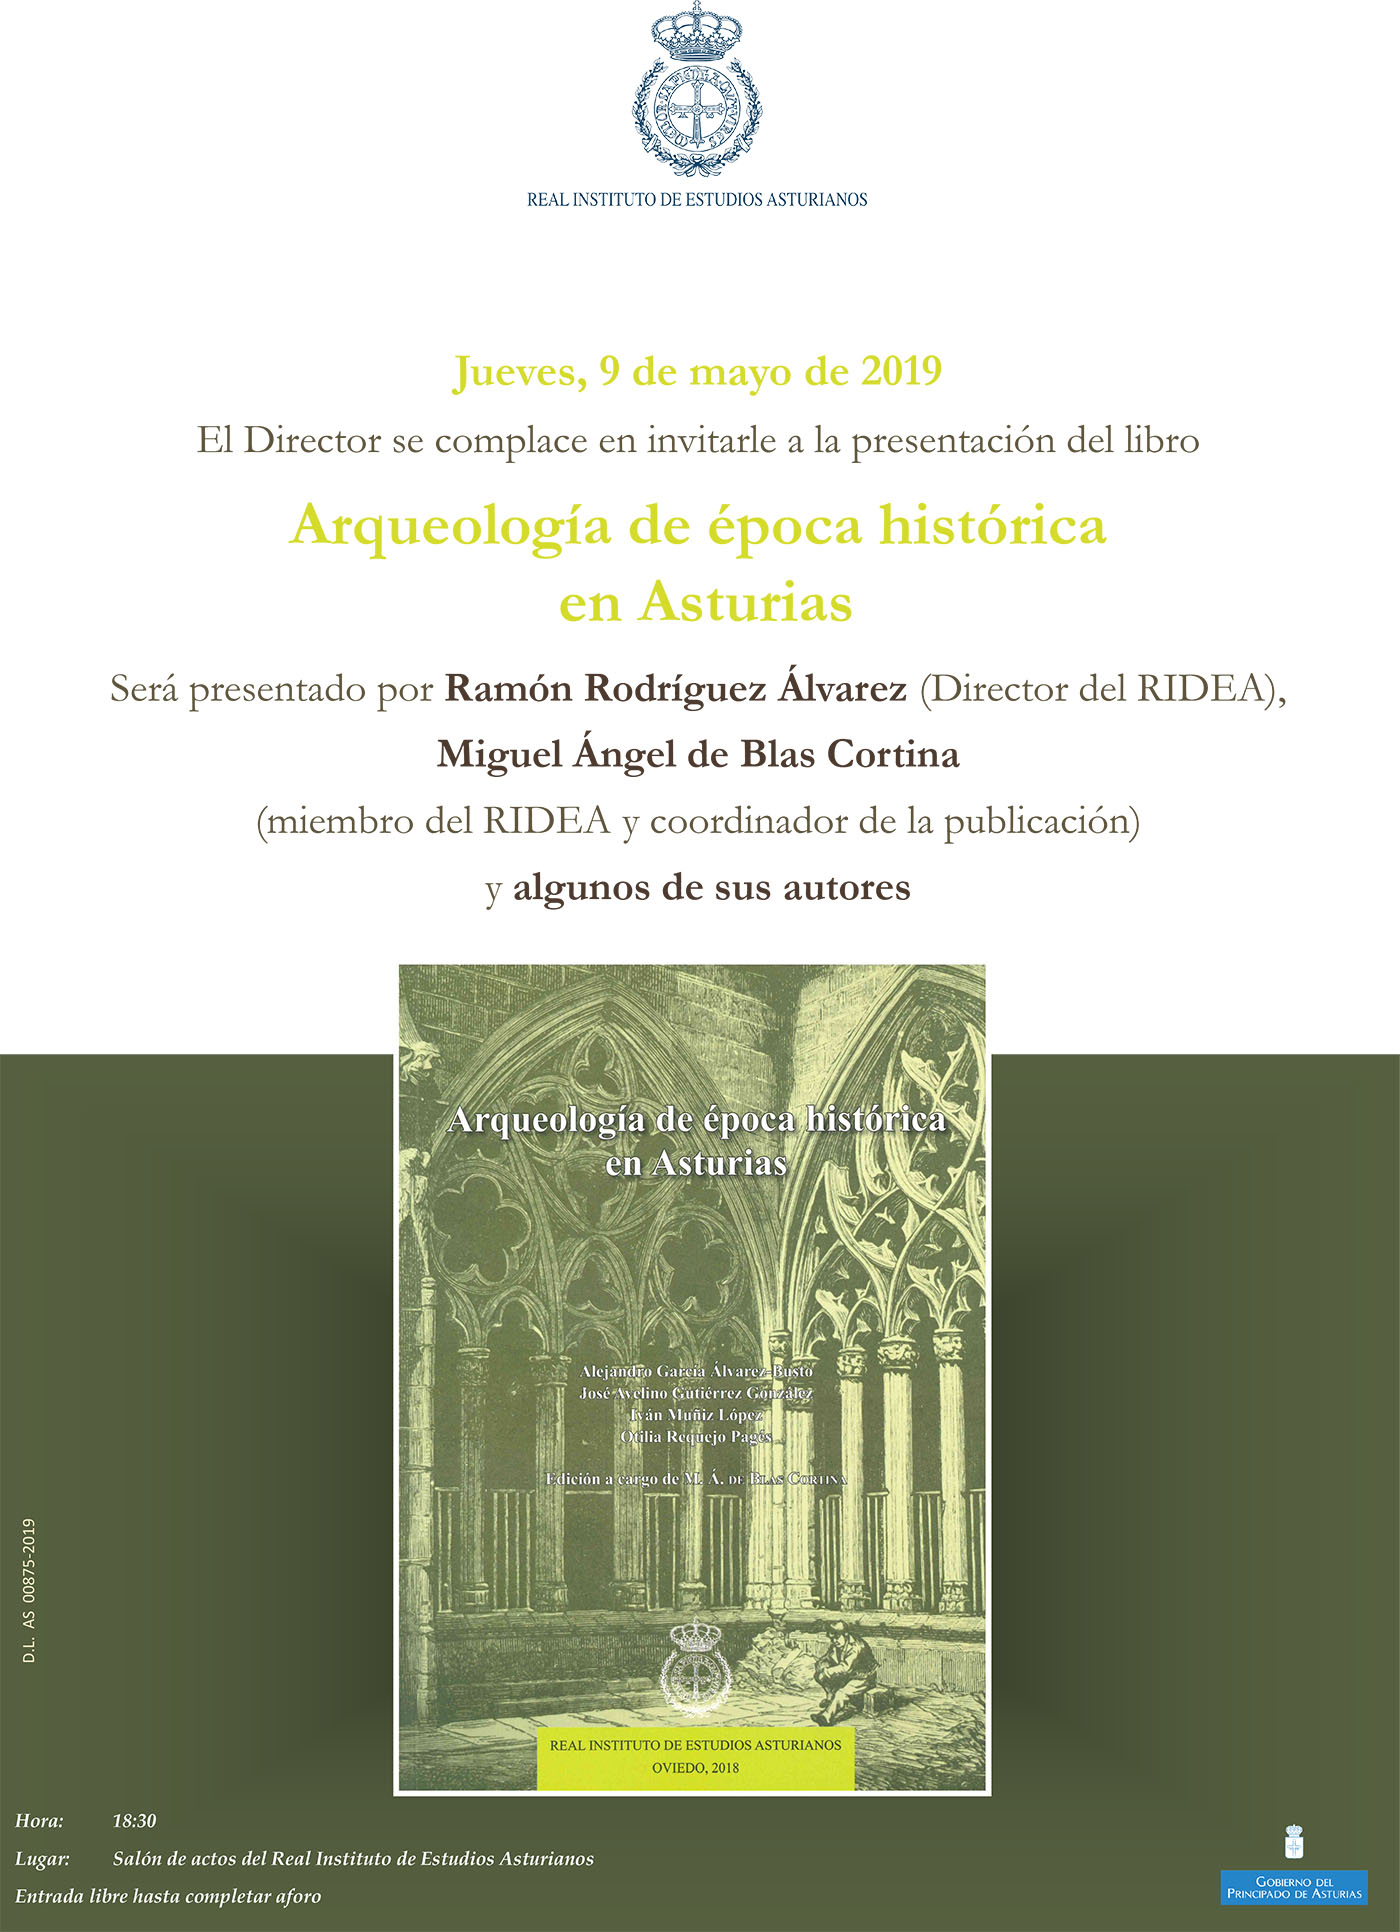 Imagen - Presentación del libro Arqueología de época histórica en Asturias